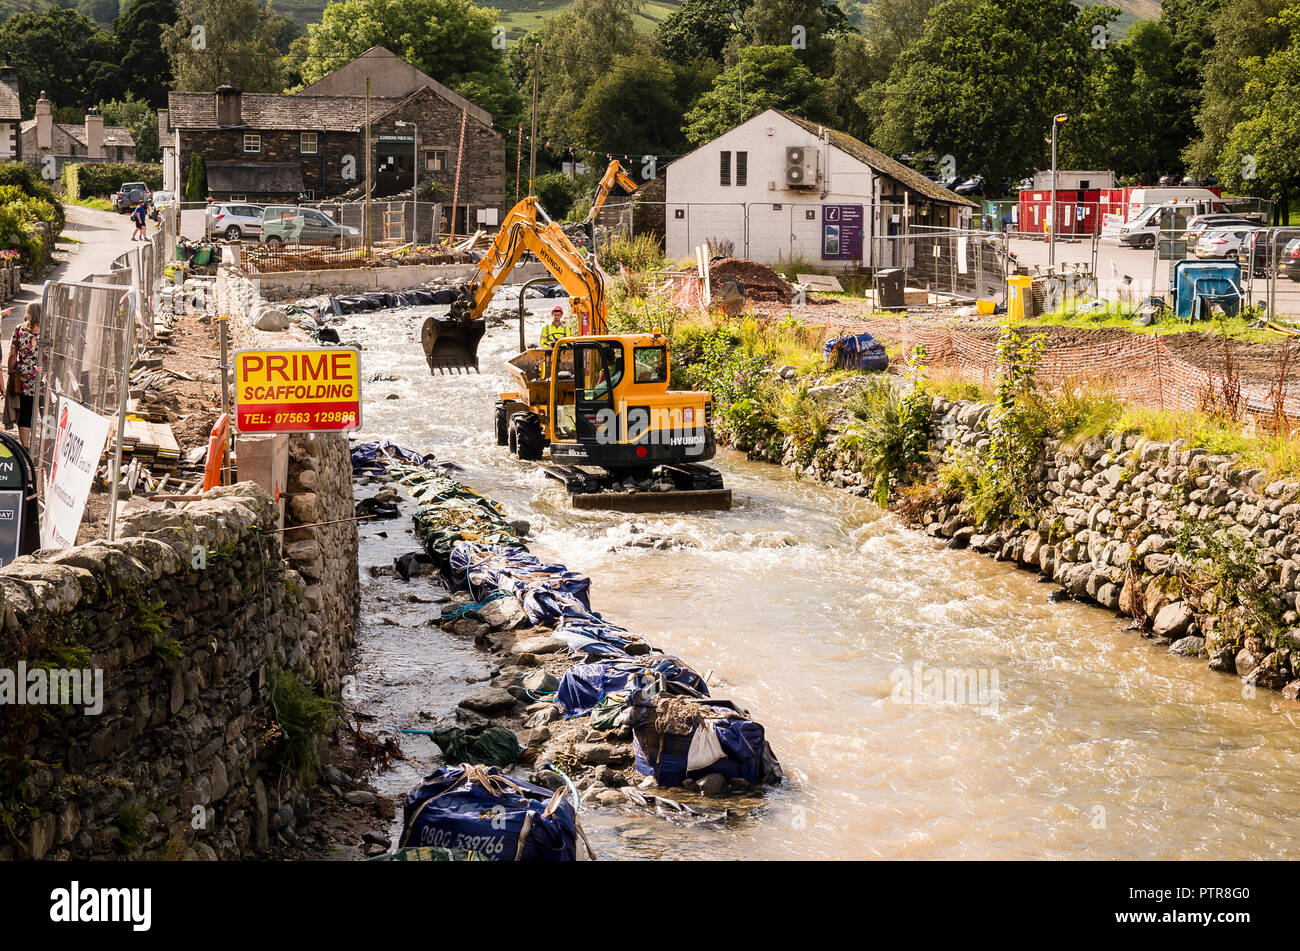 Nettoyage des débris de la rivière à Penrith Cumbria England UK Glendinning après des inondations dévastatrices a causé de graves dommages au village et locales sont Banque D'Images